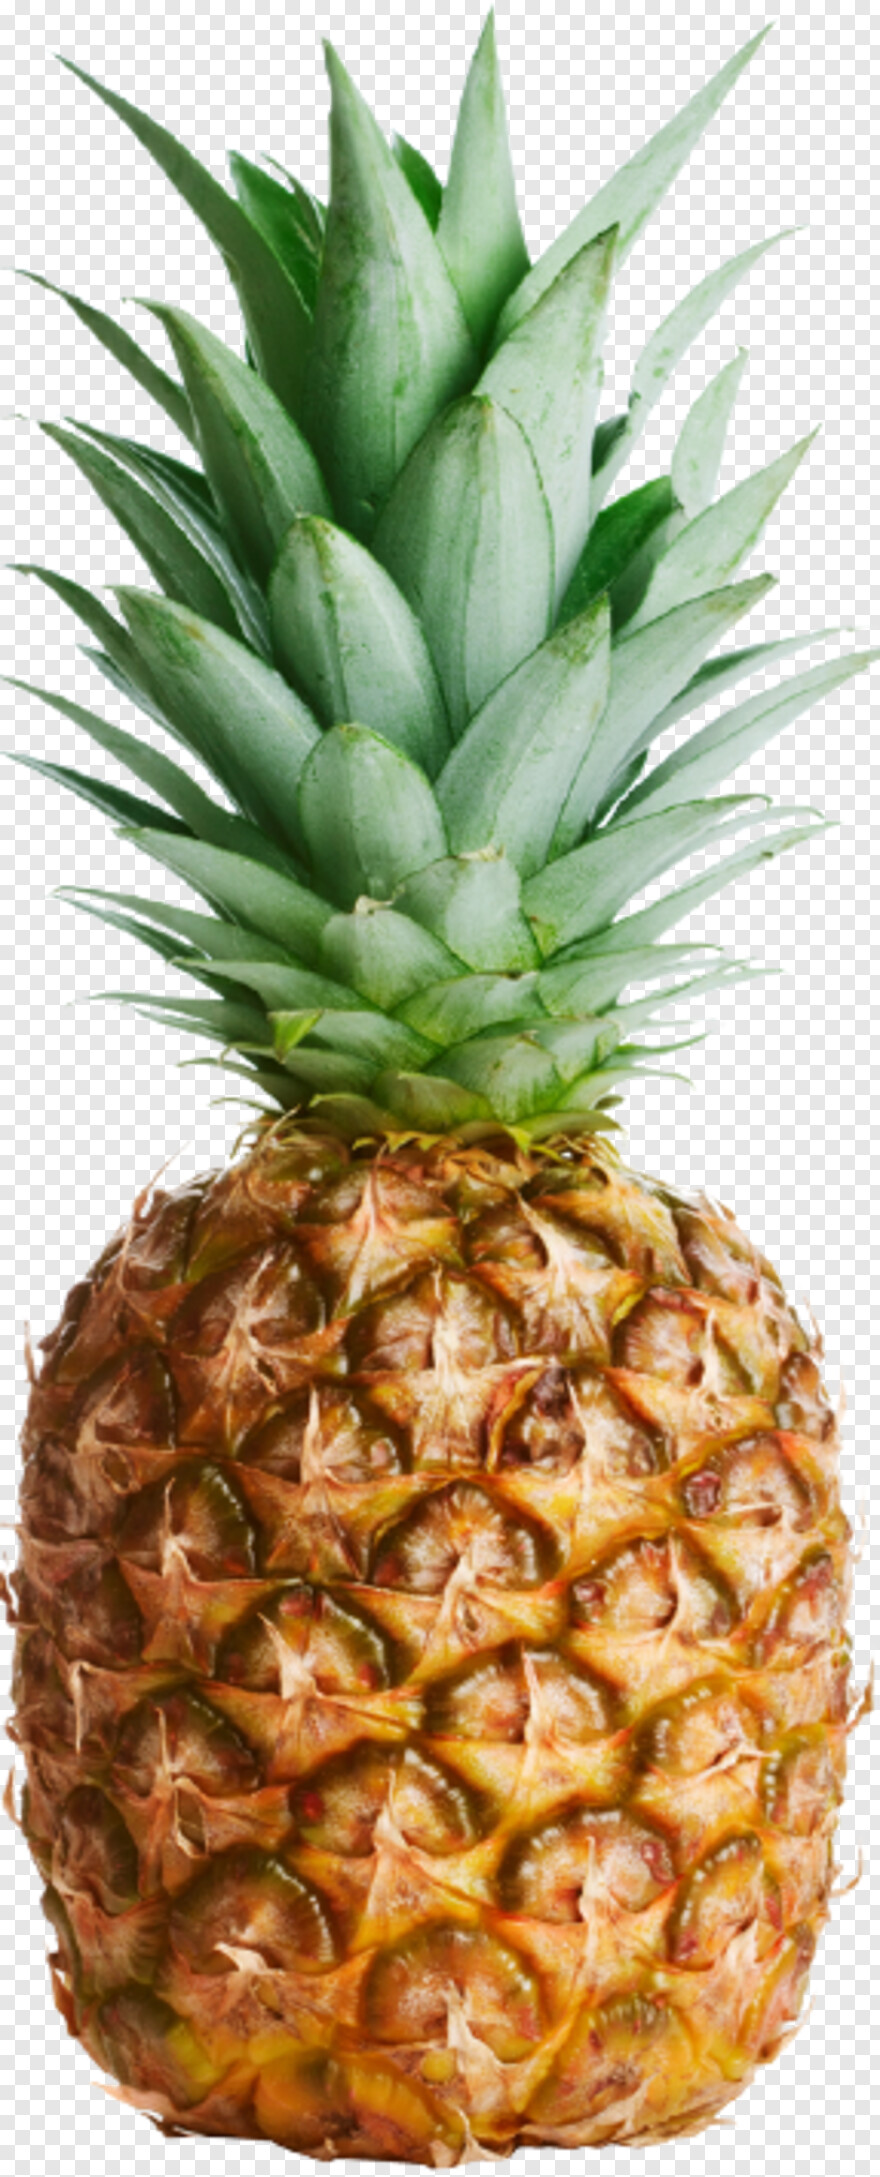 pineapple-juice # 356646